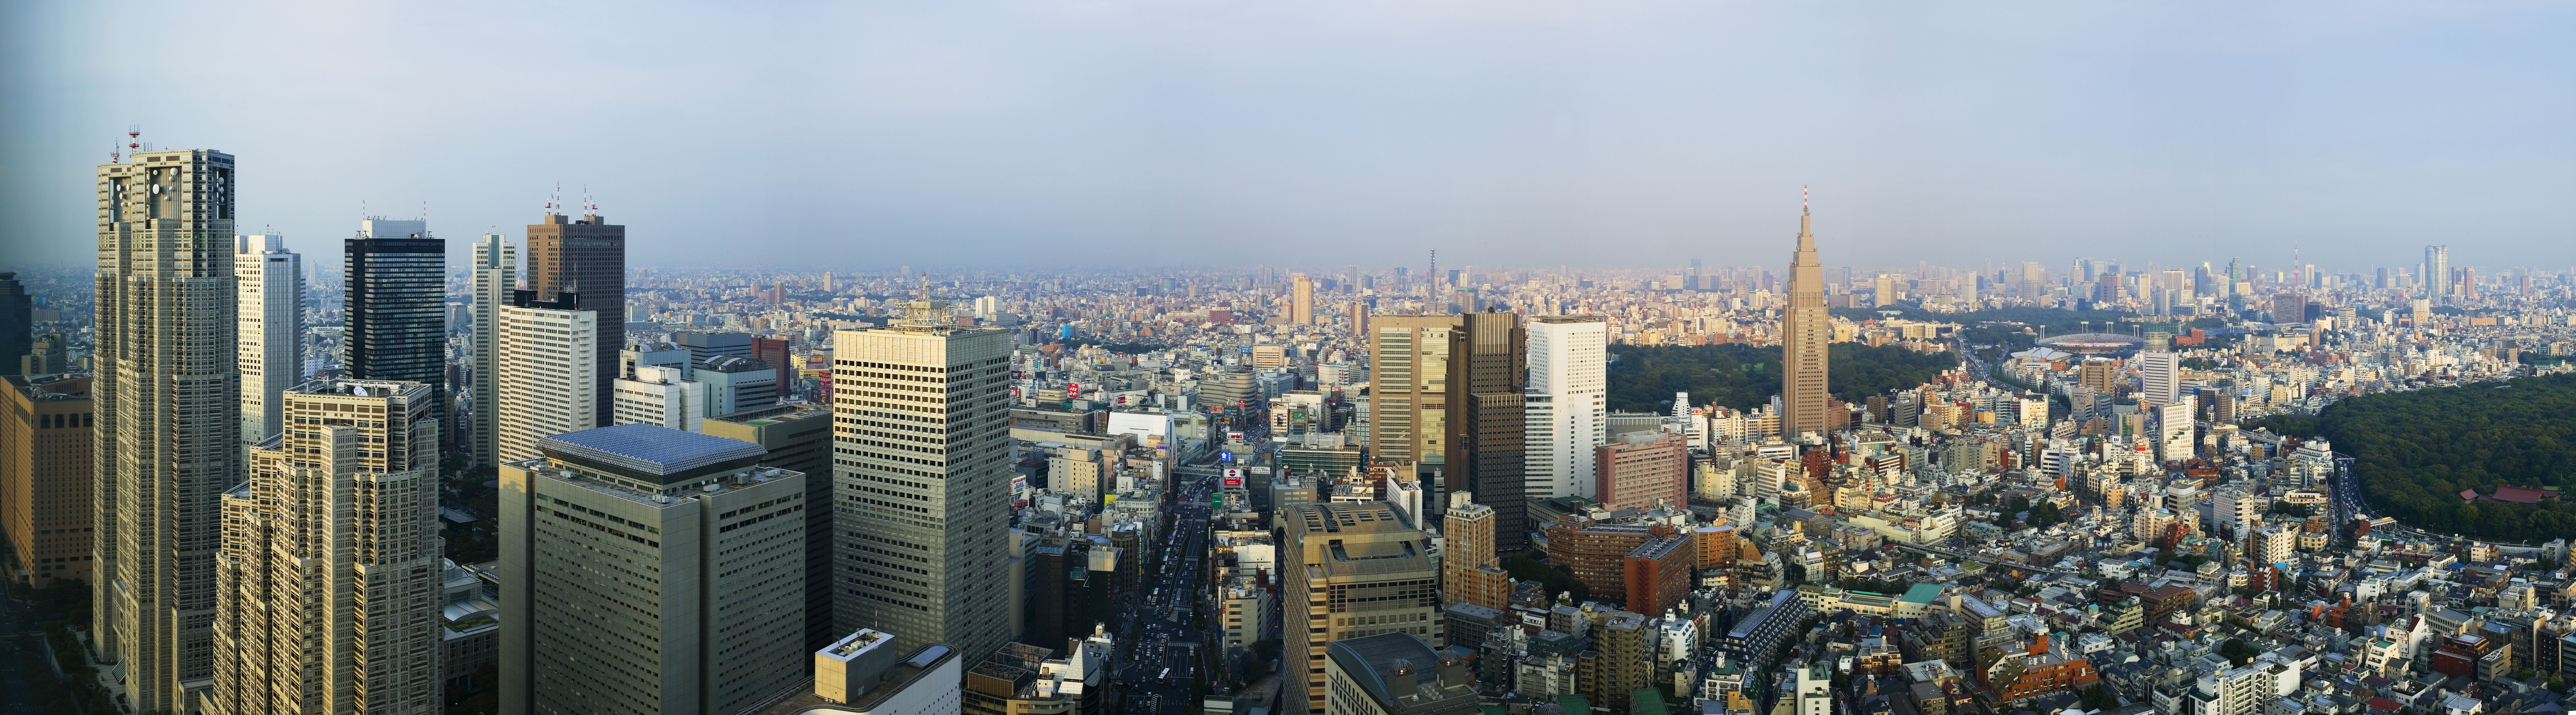 fotografia, material, livra, ajardine, imagine, proveja fotografia,Shinjuku desenvolveu centro de cidade recentemente, construindo, O Tquio MetropolitGovernment escritrio, DoCoMo sobressaem, rodovia nacional